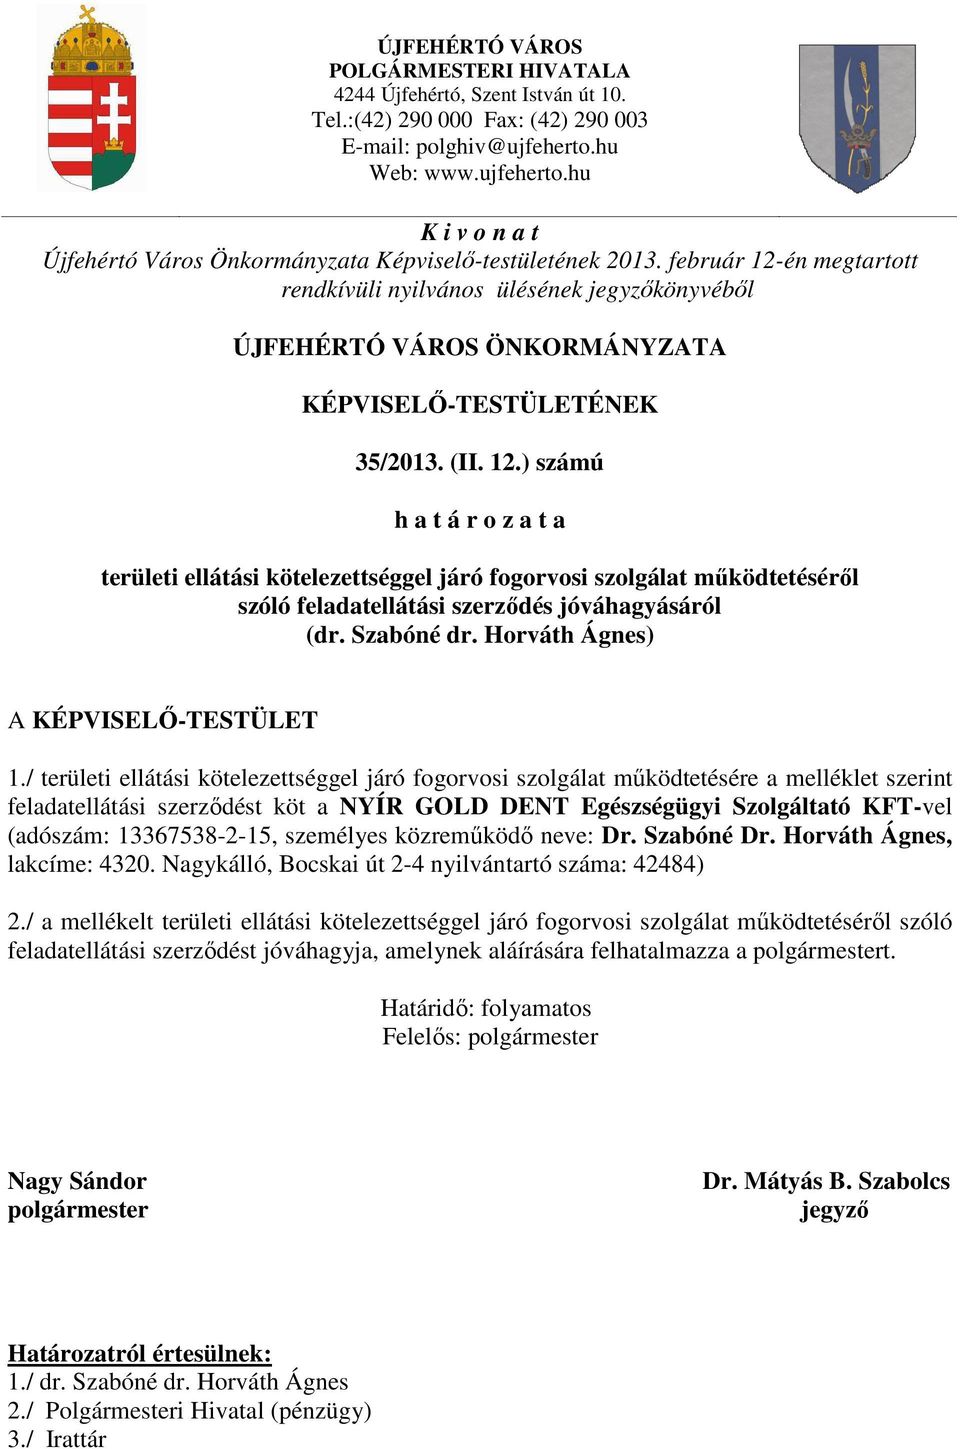 február 12-én megtartott rendkívüli nyilvános ülésének jegyzőkönyvéből ÚJFEHÉRTÓ VÁROS ÖNKORMÁNYZATA KÉPVISELŐ-TESTÜLETÉNEK 35/2013. (II. 12.) számú h a t á r o z a t a területi ellátási kötelezettséggel járó fogorvosi szolgálat működtetéséről szóló feladatellátási szerződés jóváhagyásáról (dr.